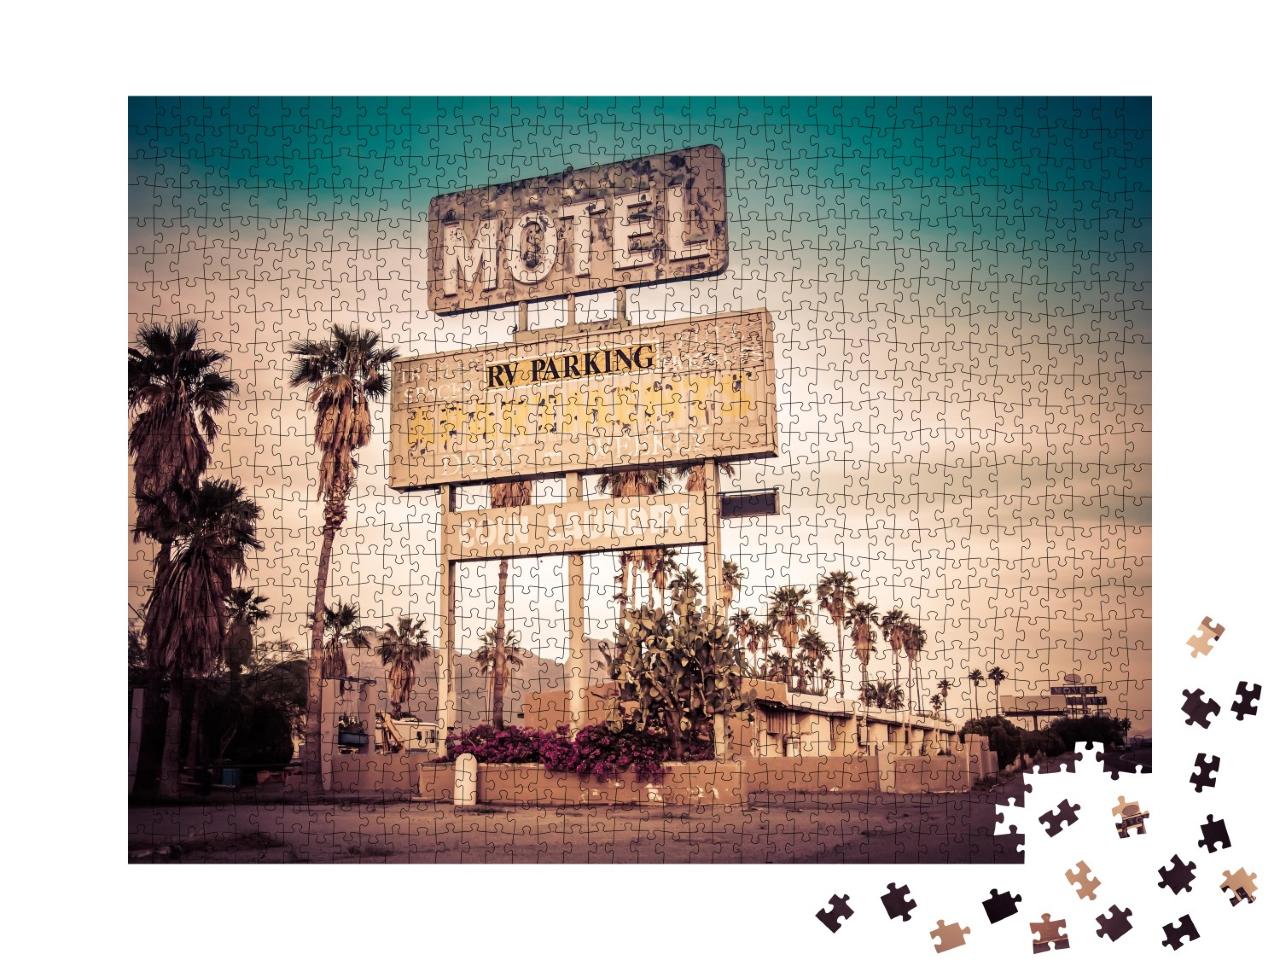 Puzzle de 1000 pièces « Une enseigne de motel au milieu du désert, États-Unis »